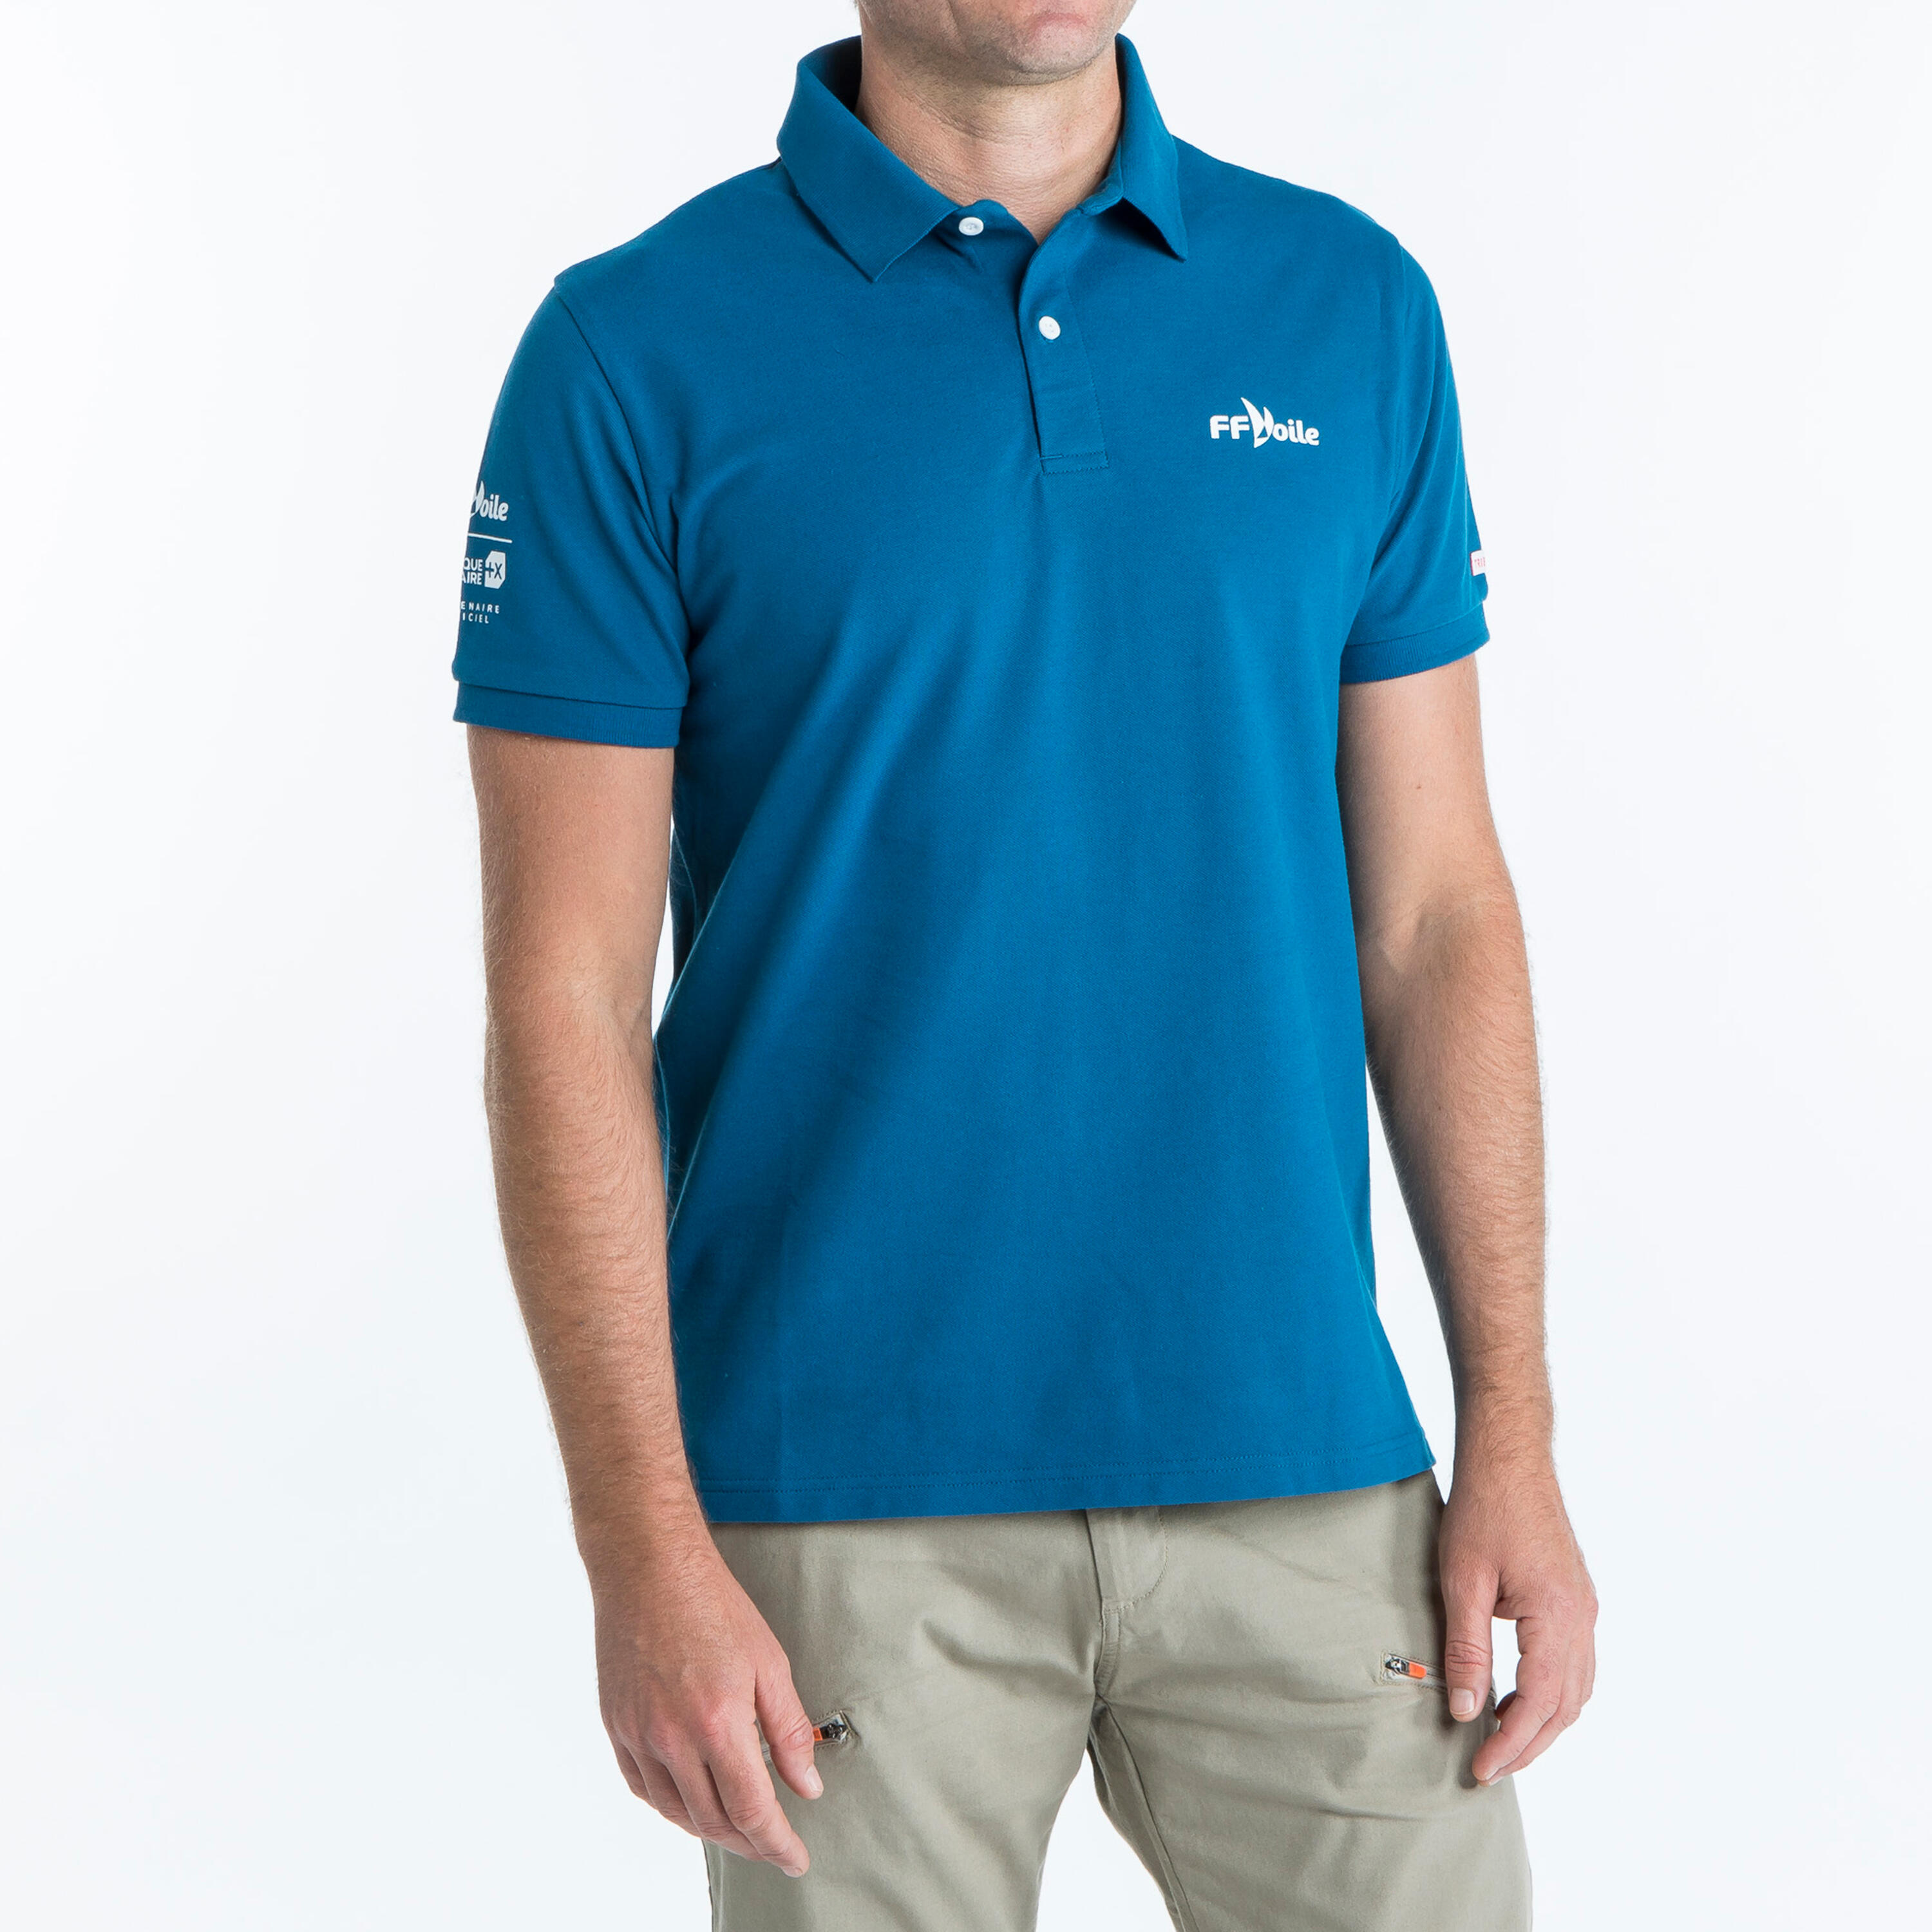 MODA DONNA Camicie & T-shirt Polo Basic sconto 62% EU: 40 Decathlon Polo Blu 44 